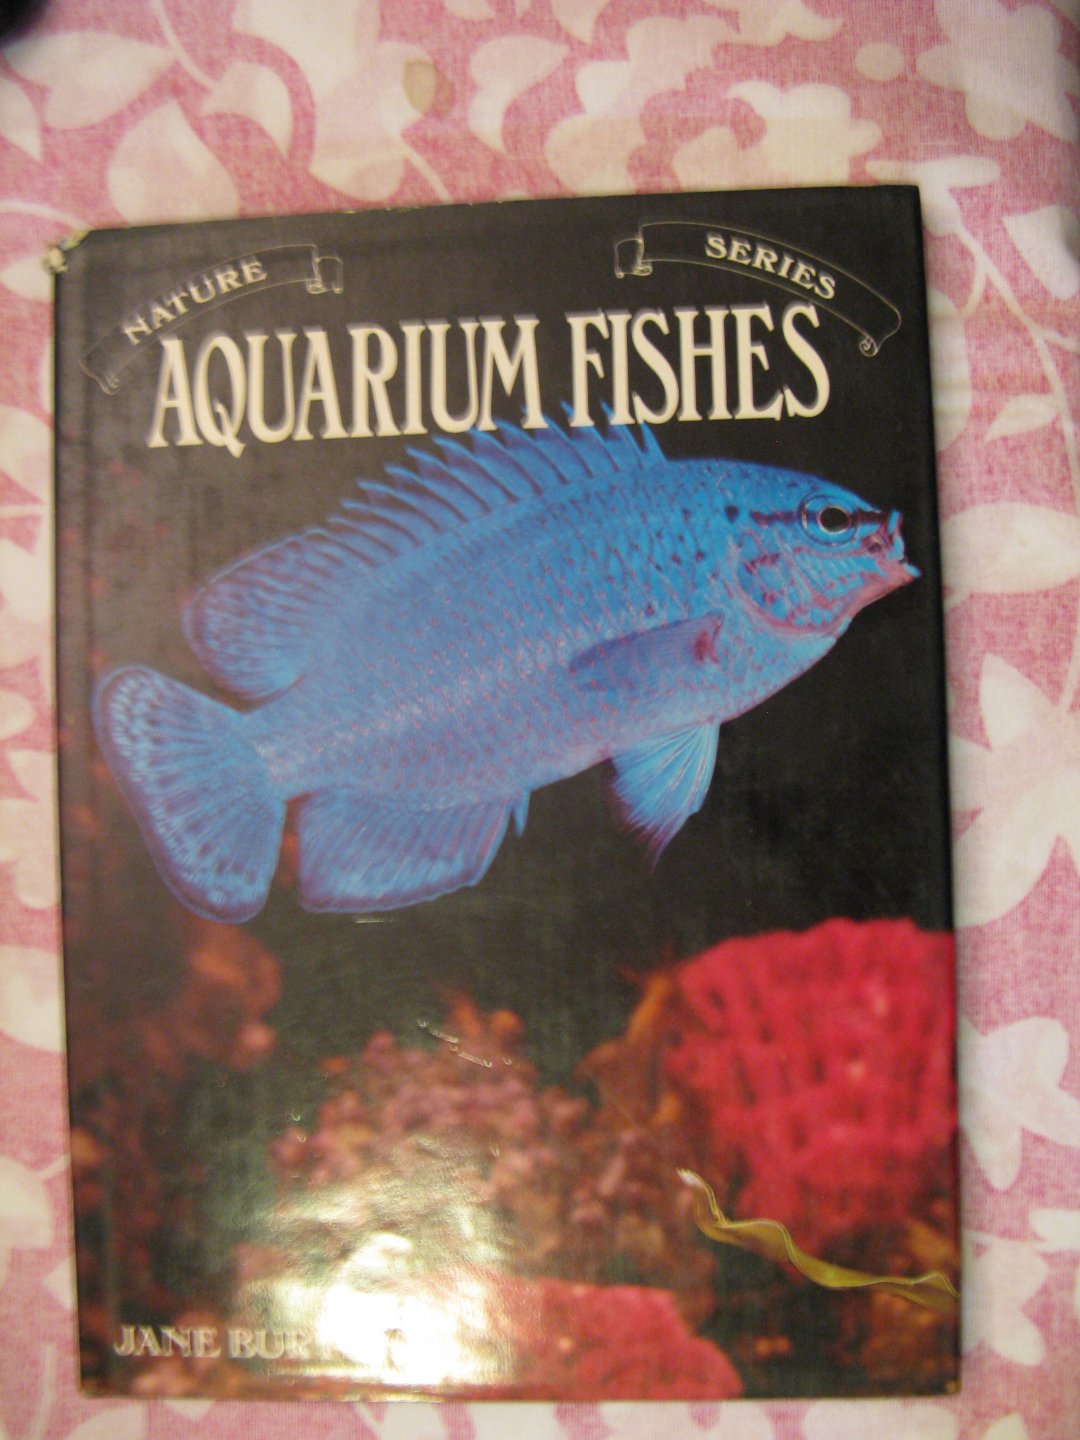 Jane burton - Aquarium fishes